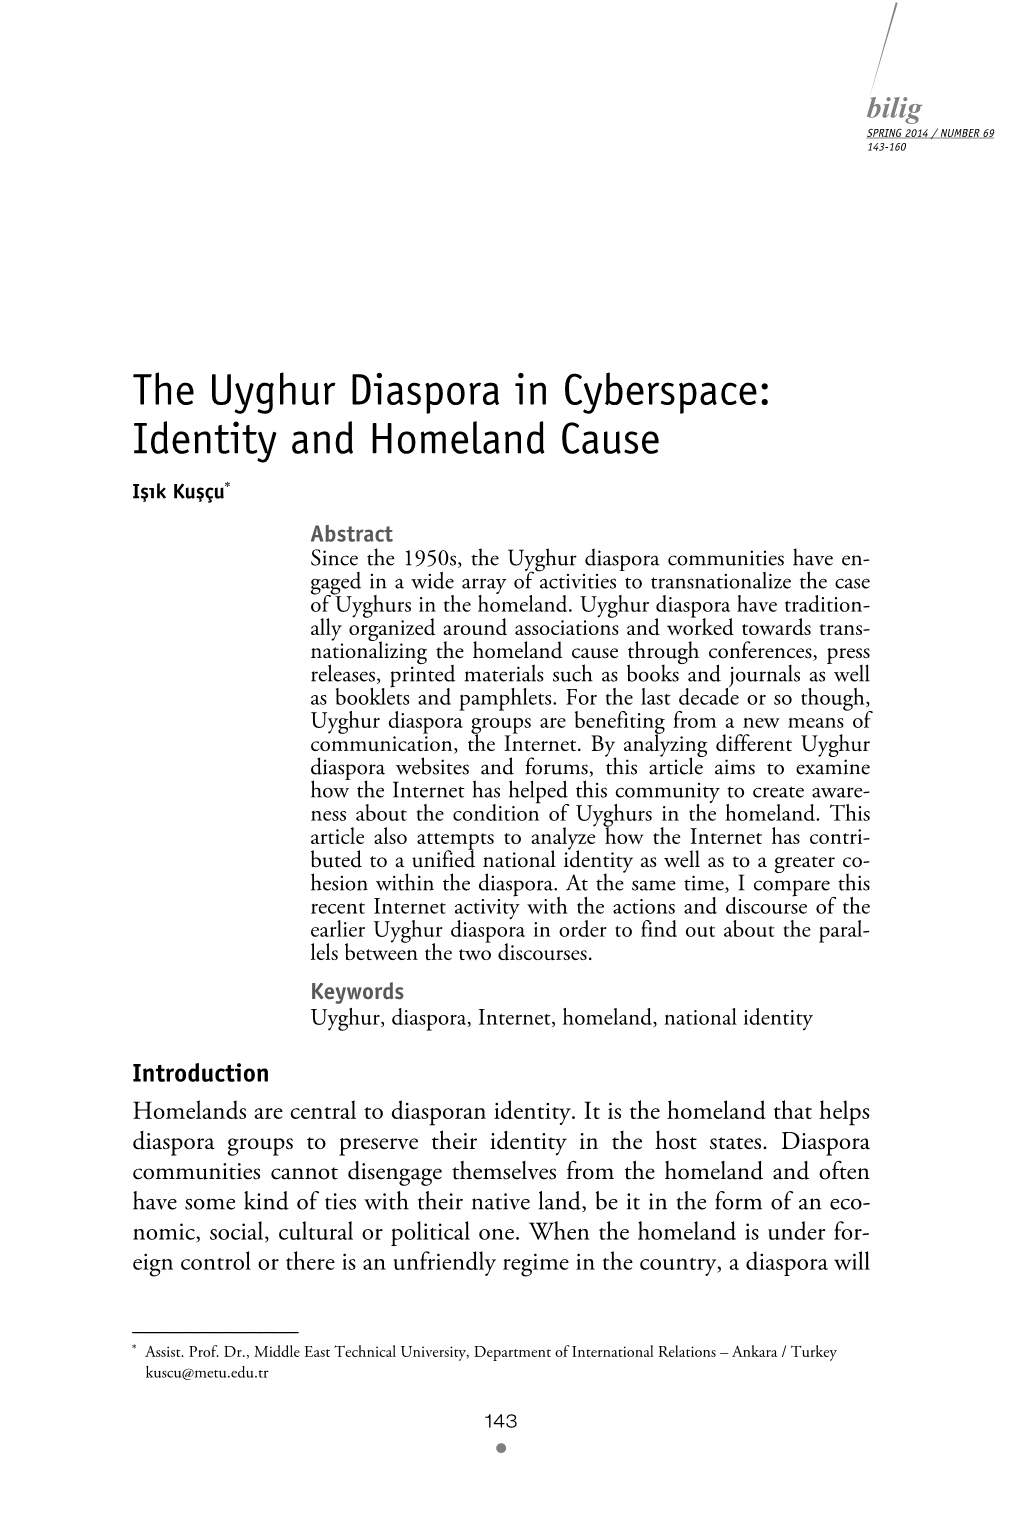 The Uyghur Diaspora in Cyberspace